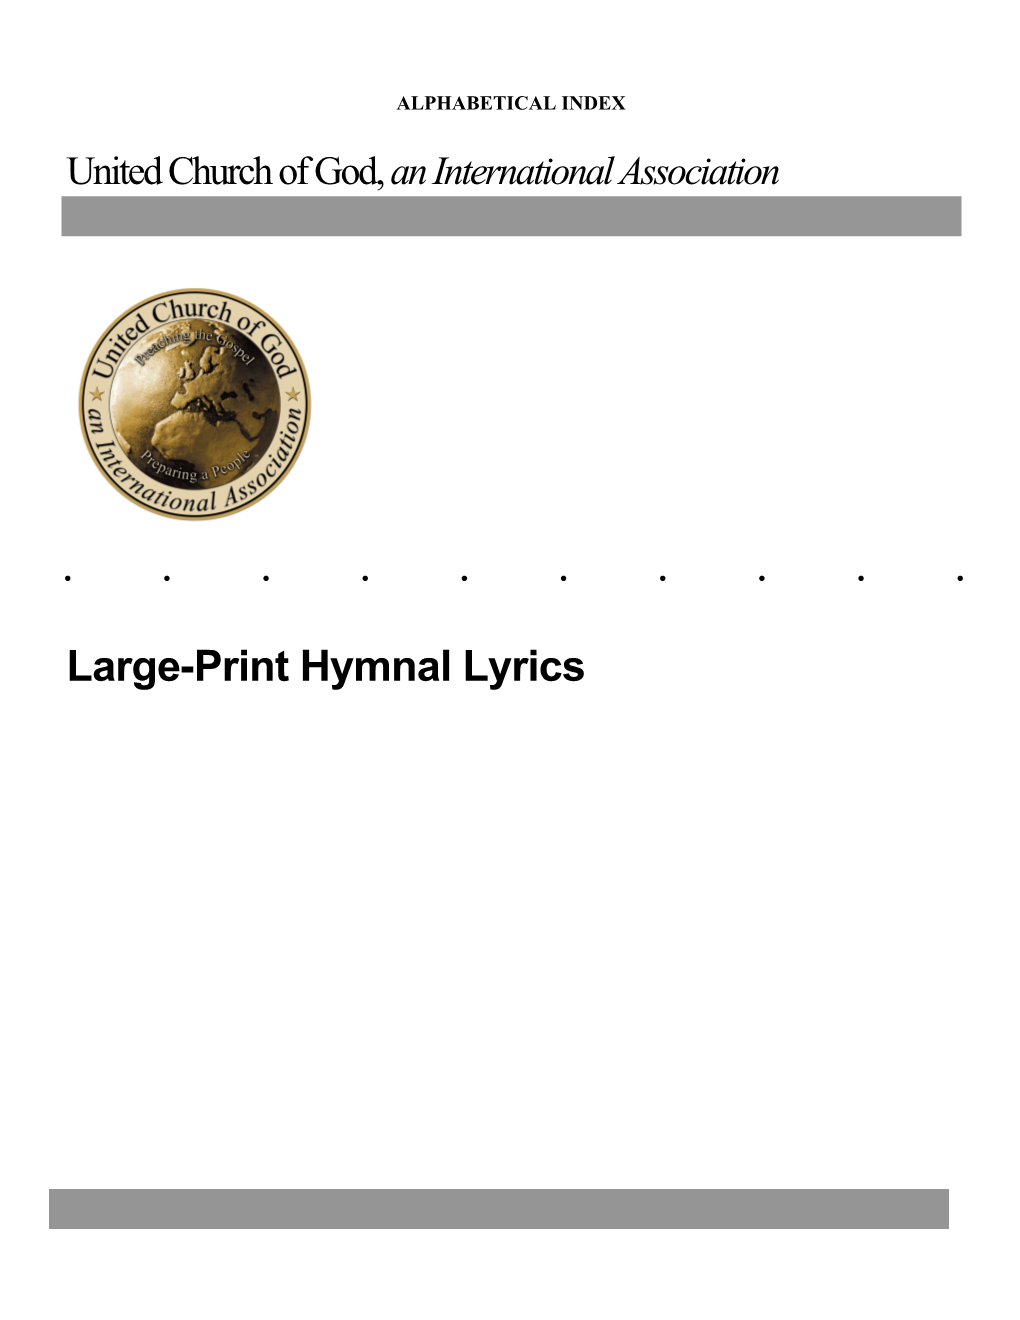 2007 Hymnal Lyrics